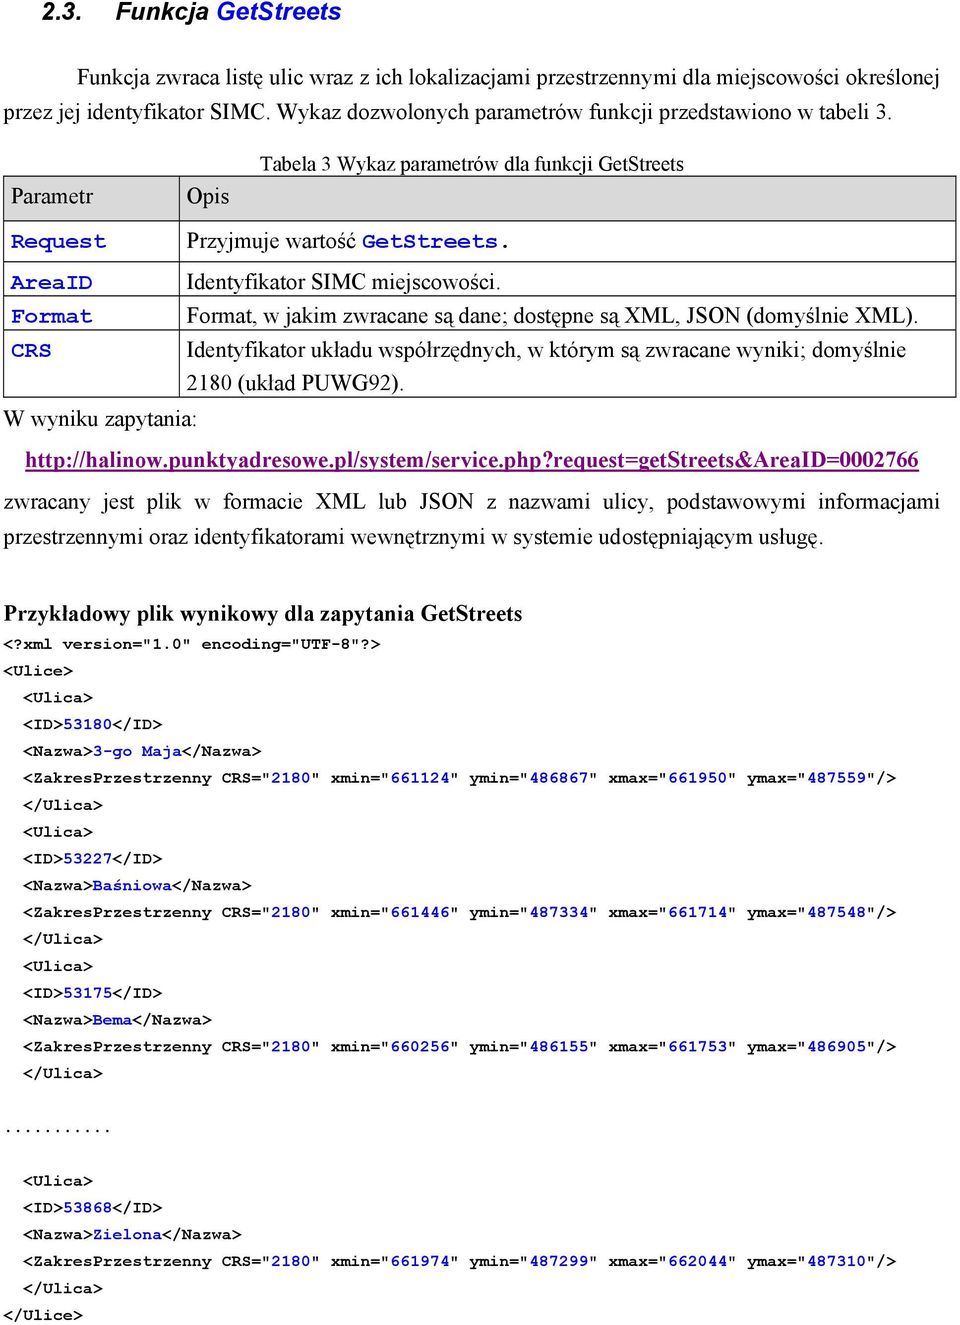 AreaID Identyfikator SIMC miejscowości. Format Format, w jakim zwracane są dane; dostępne są XML, JSON (domyślnie XML).